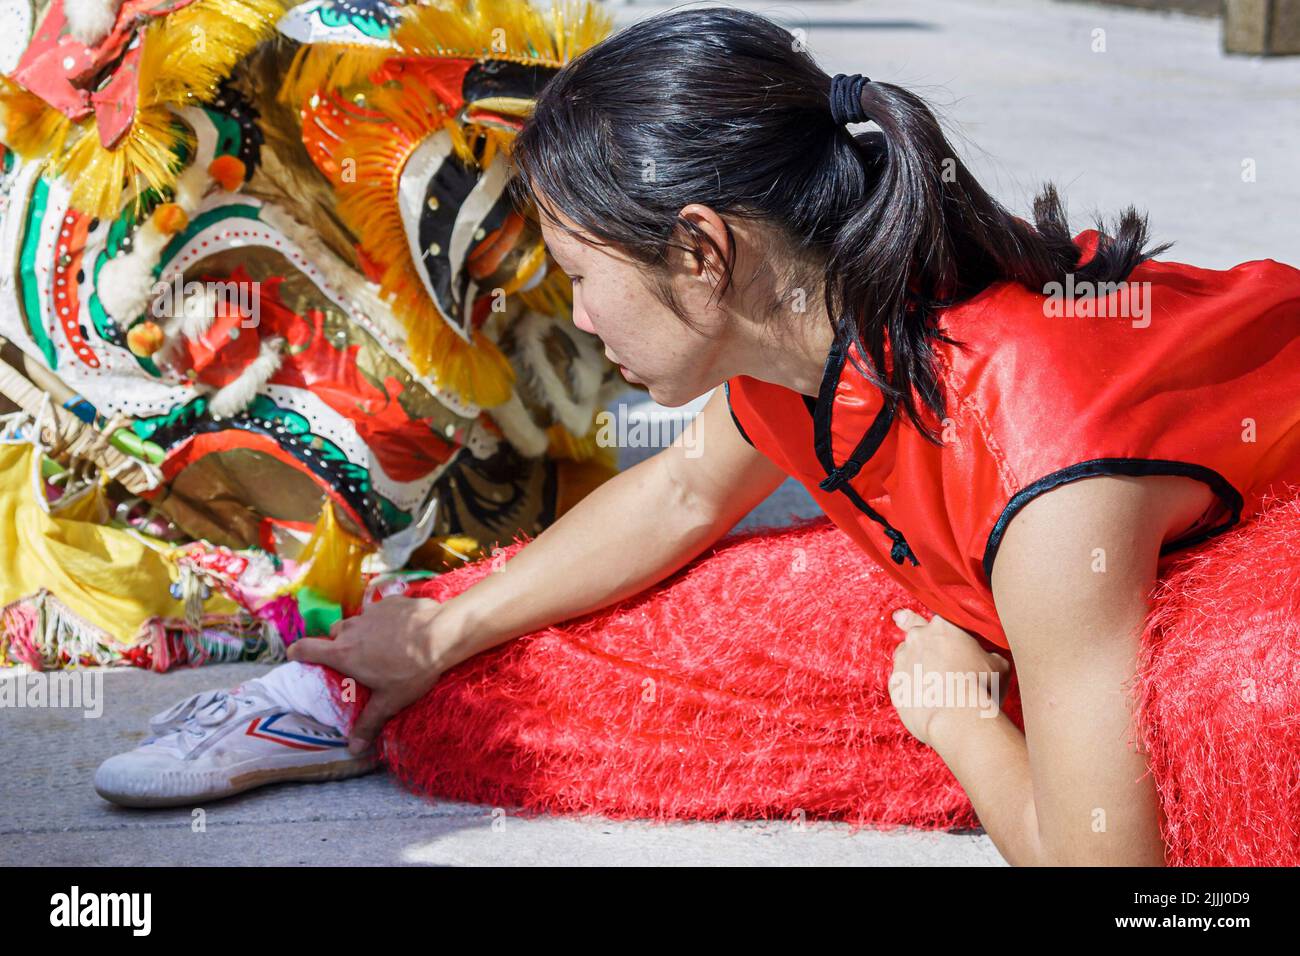 Florida Kendall,Miami Dade College,escuela,campus,festivales de Año Nuevo Chino feria de la mujer Asiática Asiática, acrobat estiramientos antes de actuar Foto de stock